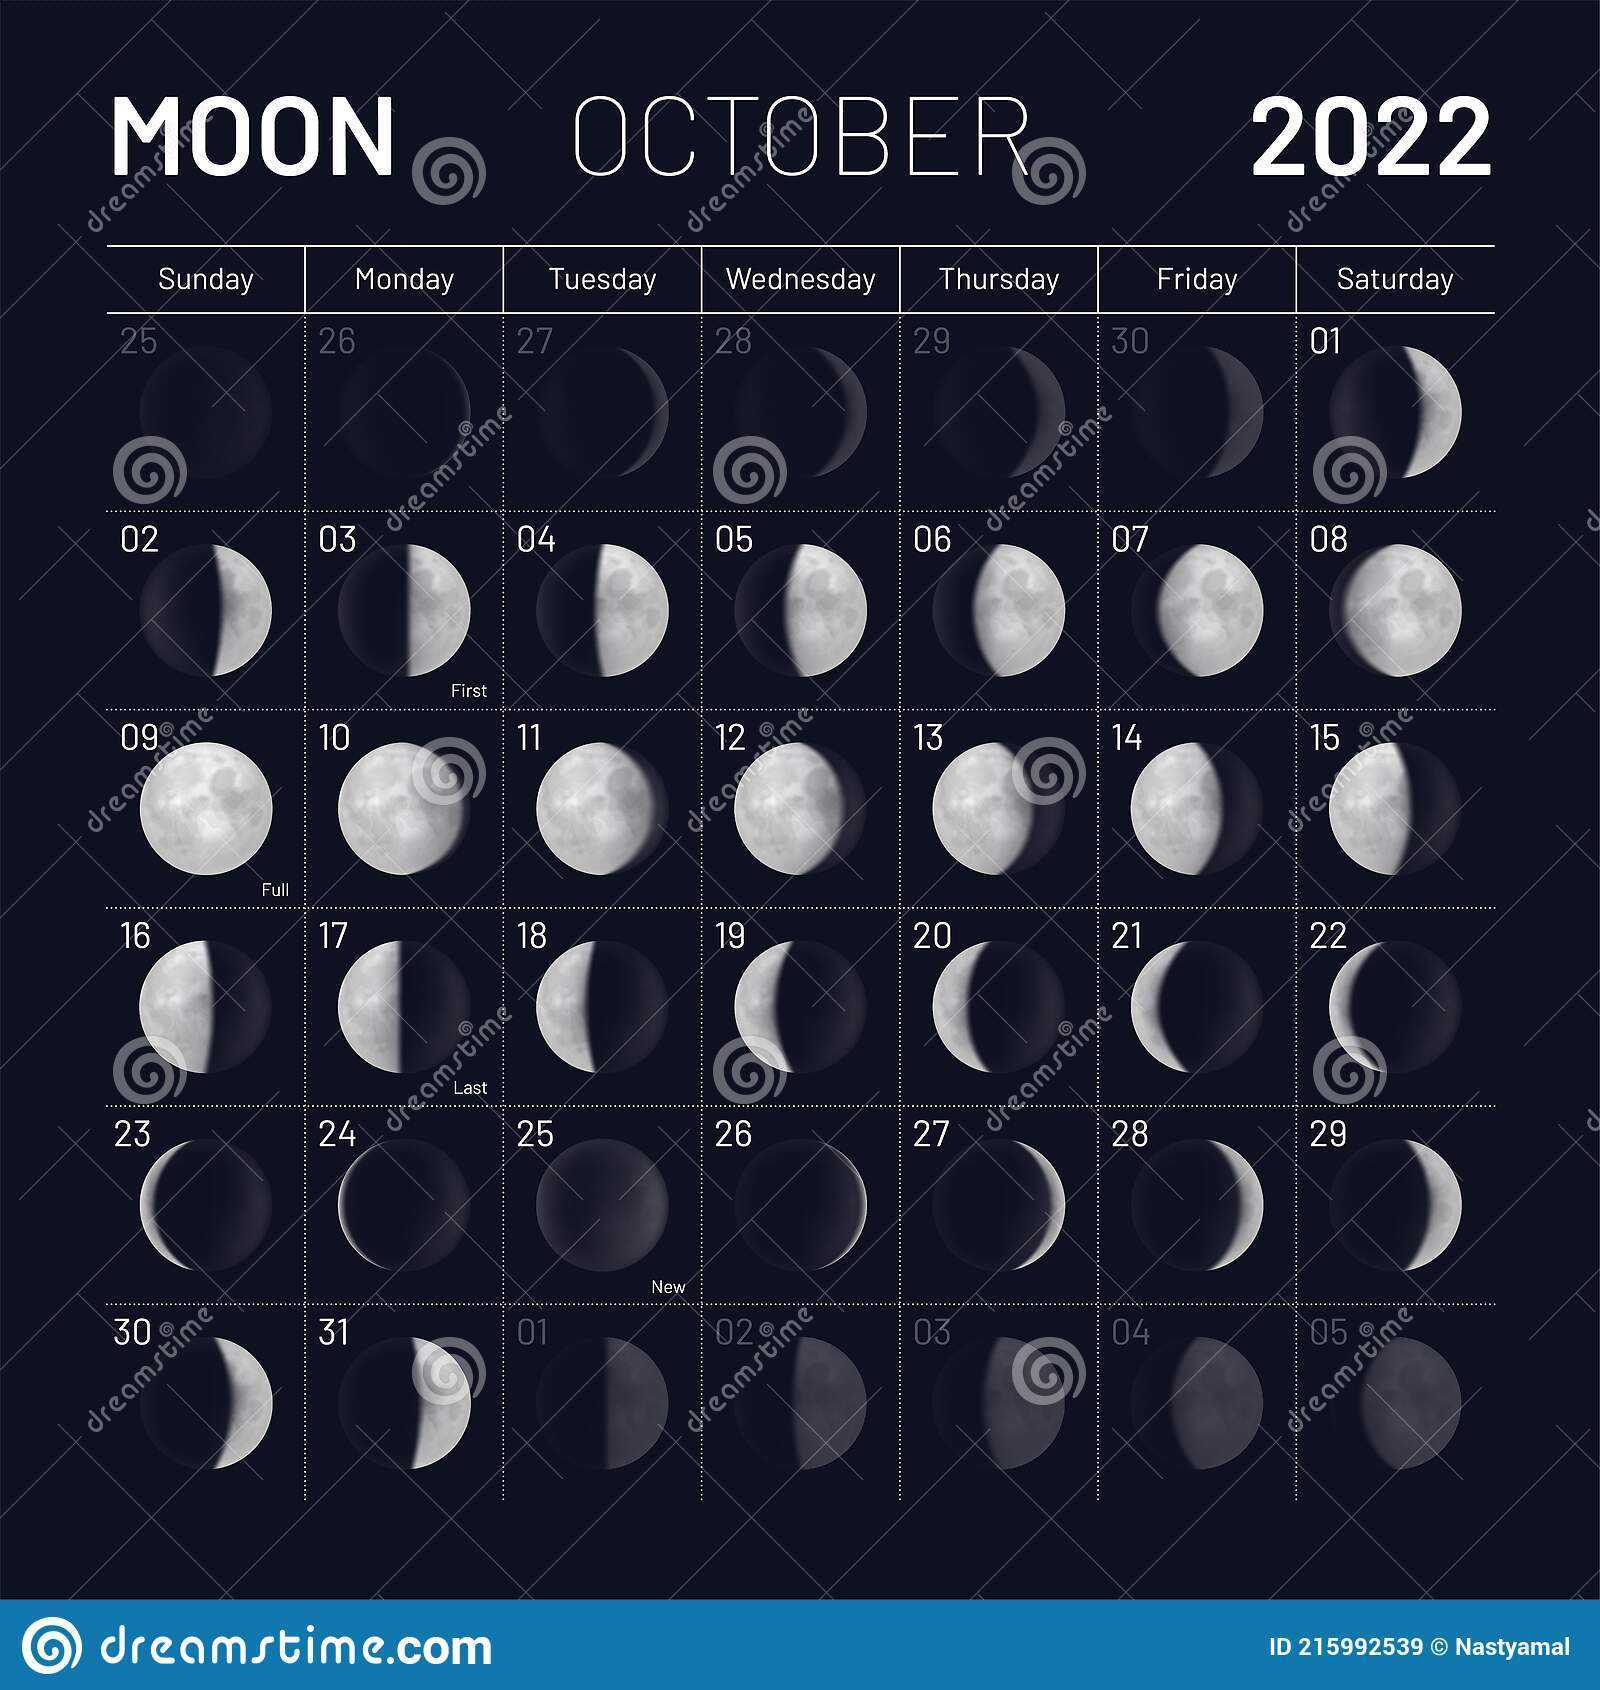 Первые лунные сутки в марте. Фазы Луны в октябре 2022 года. Лунный календарь на октябрь 2022. Календарь Луны на октябрь 2022. Календарь с фазами Луны 2022.